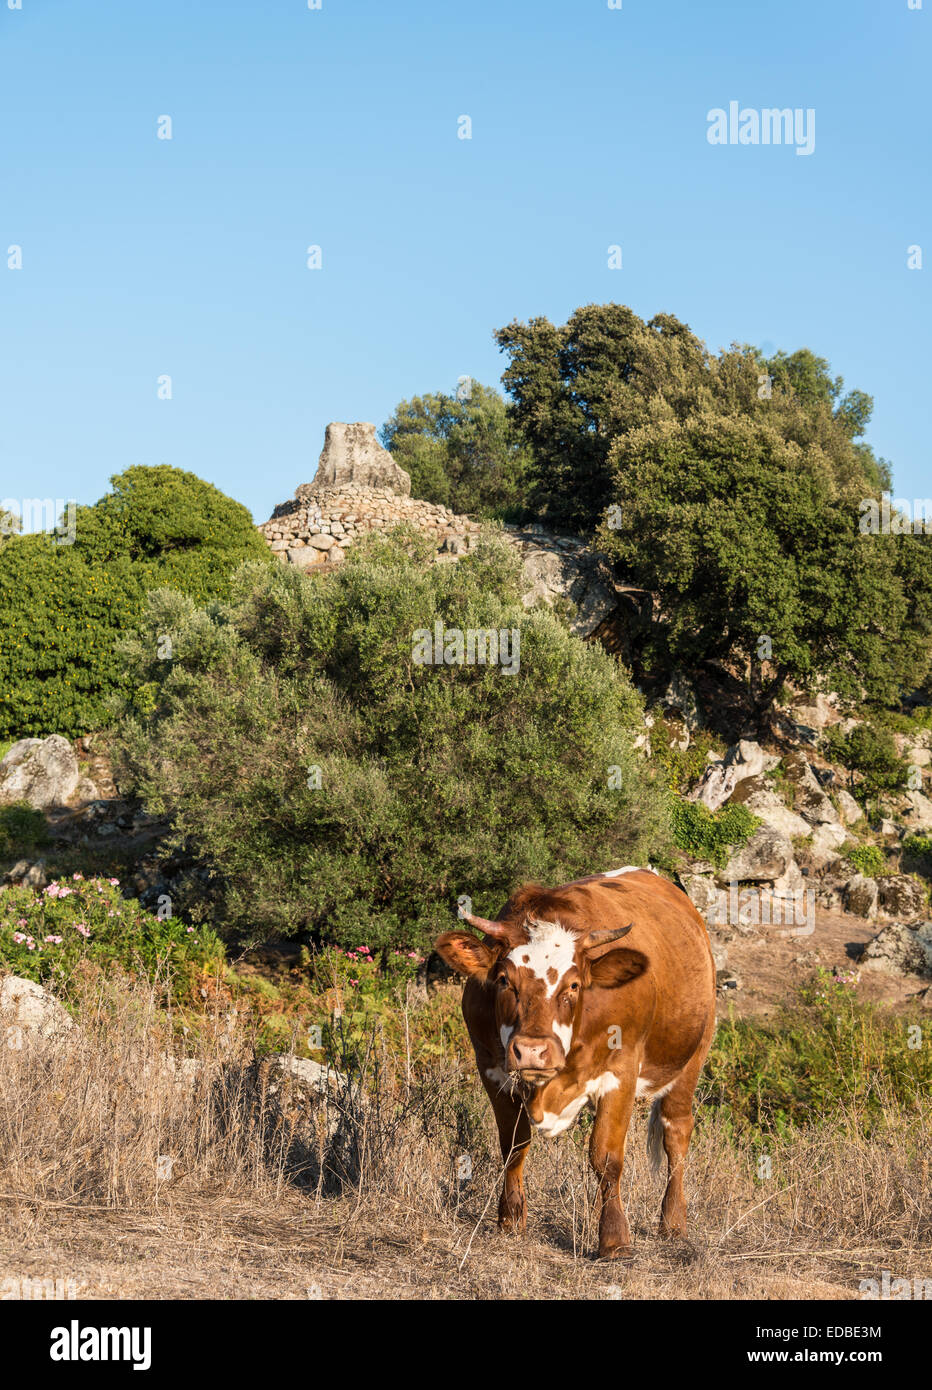 Vache brune avant le pâturage dans un site archéologique de la période néolithique, Filitosa, Corse, France Banque D'Images